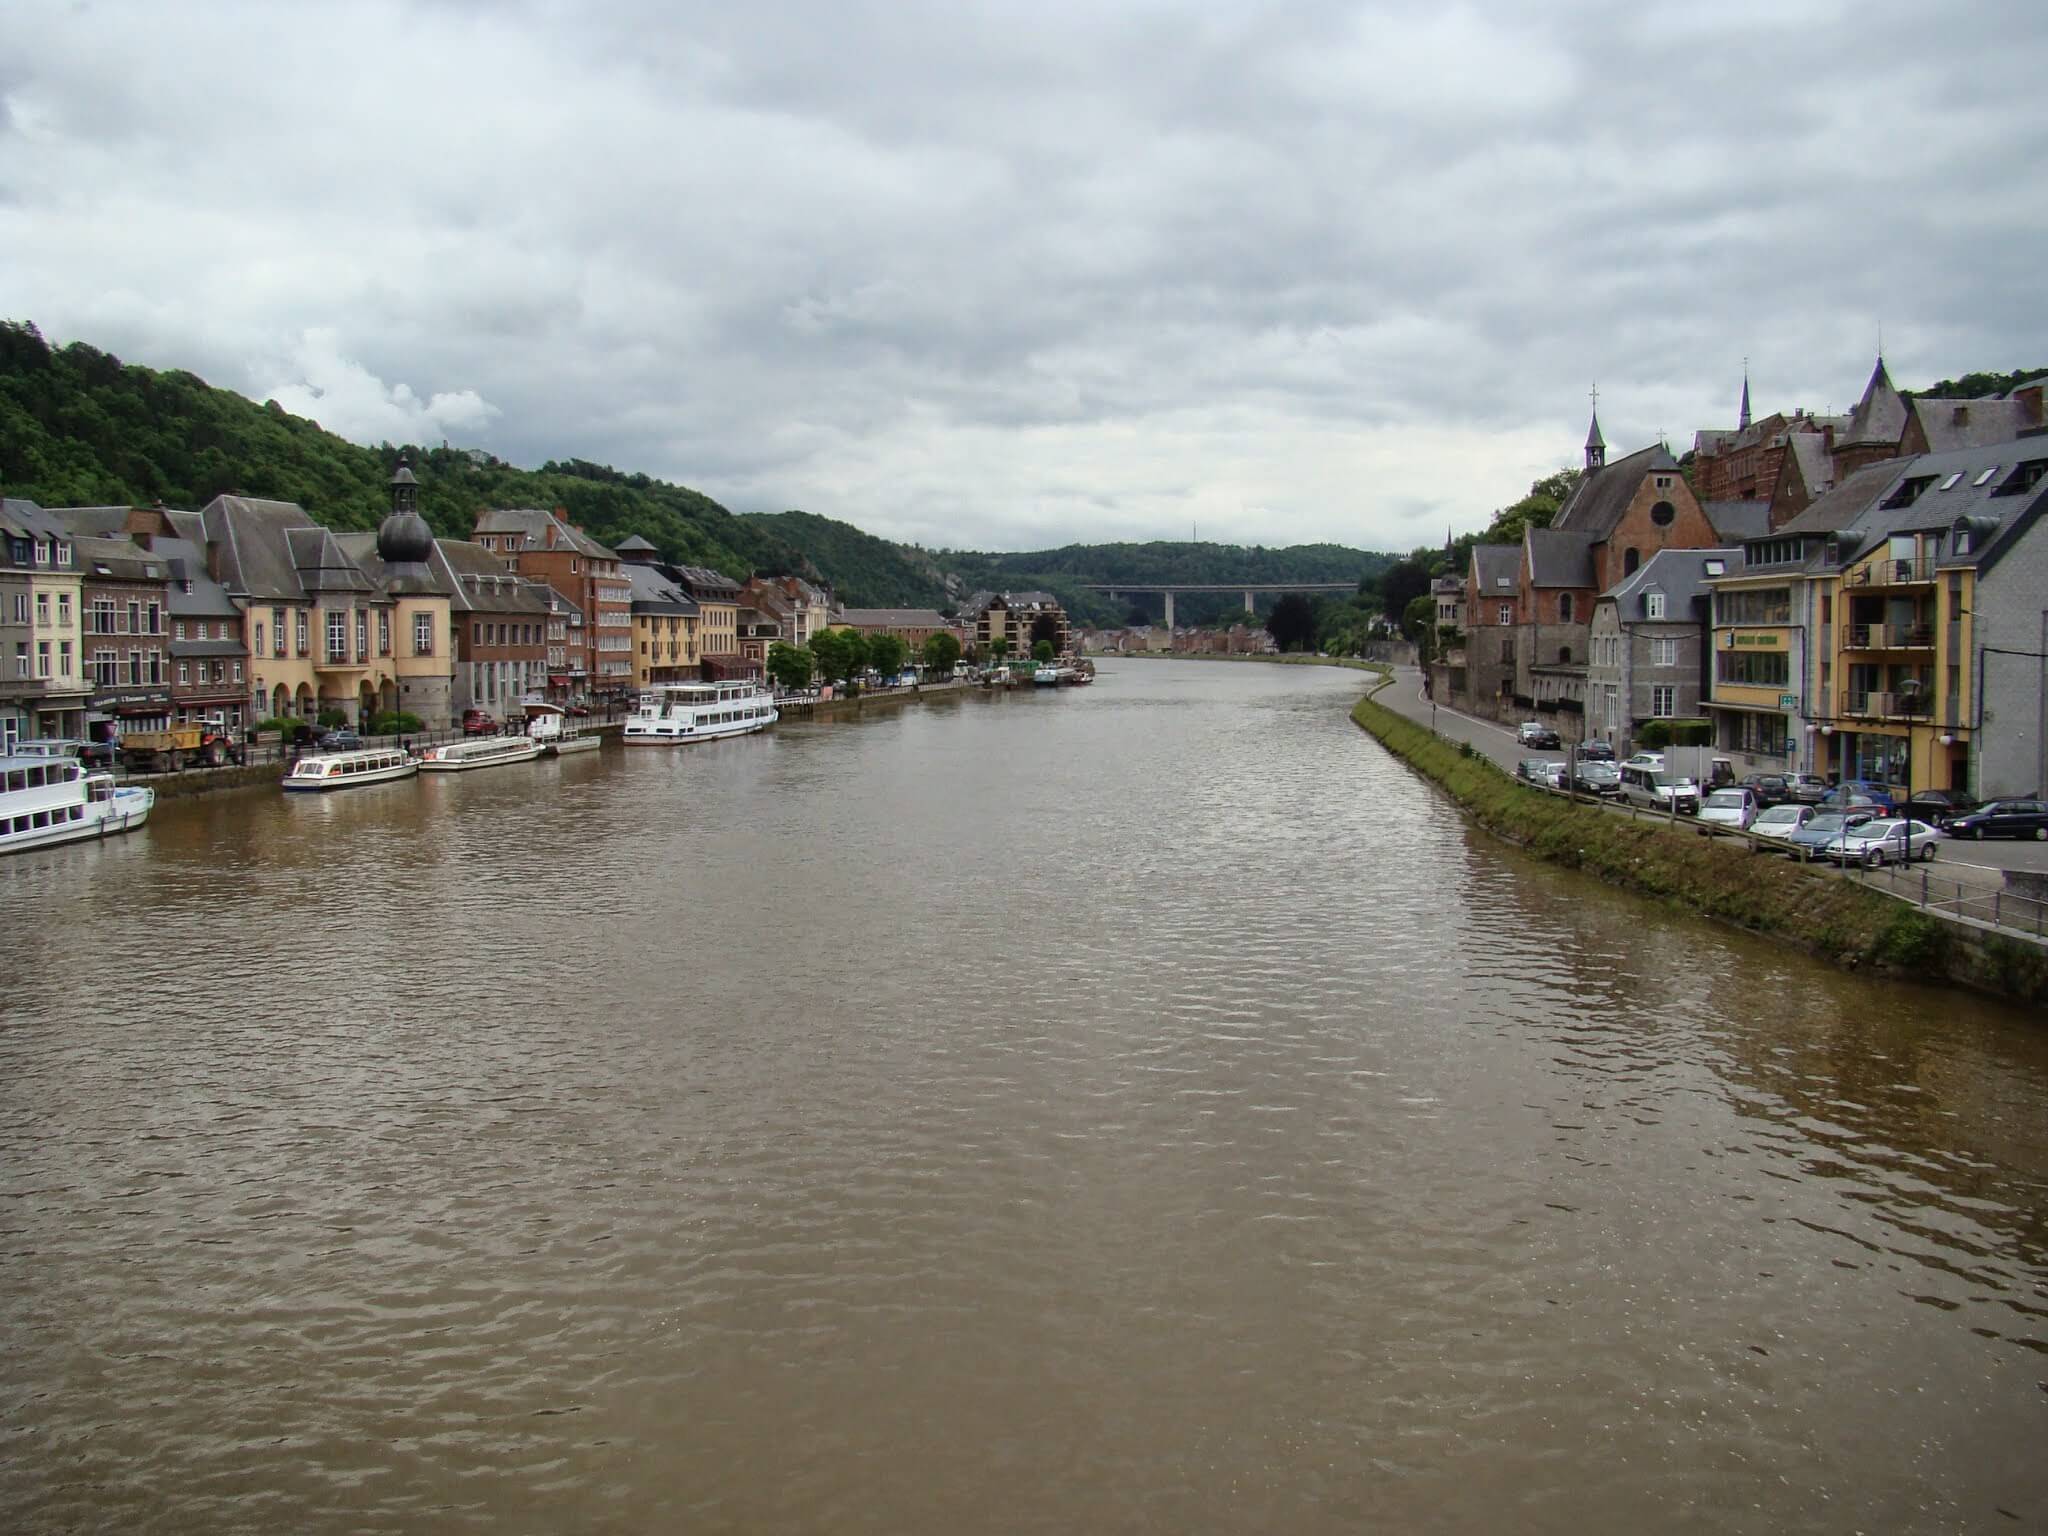 Both riversides in Dinant. Belgium